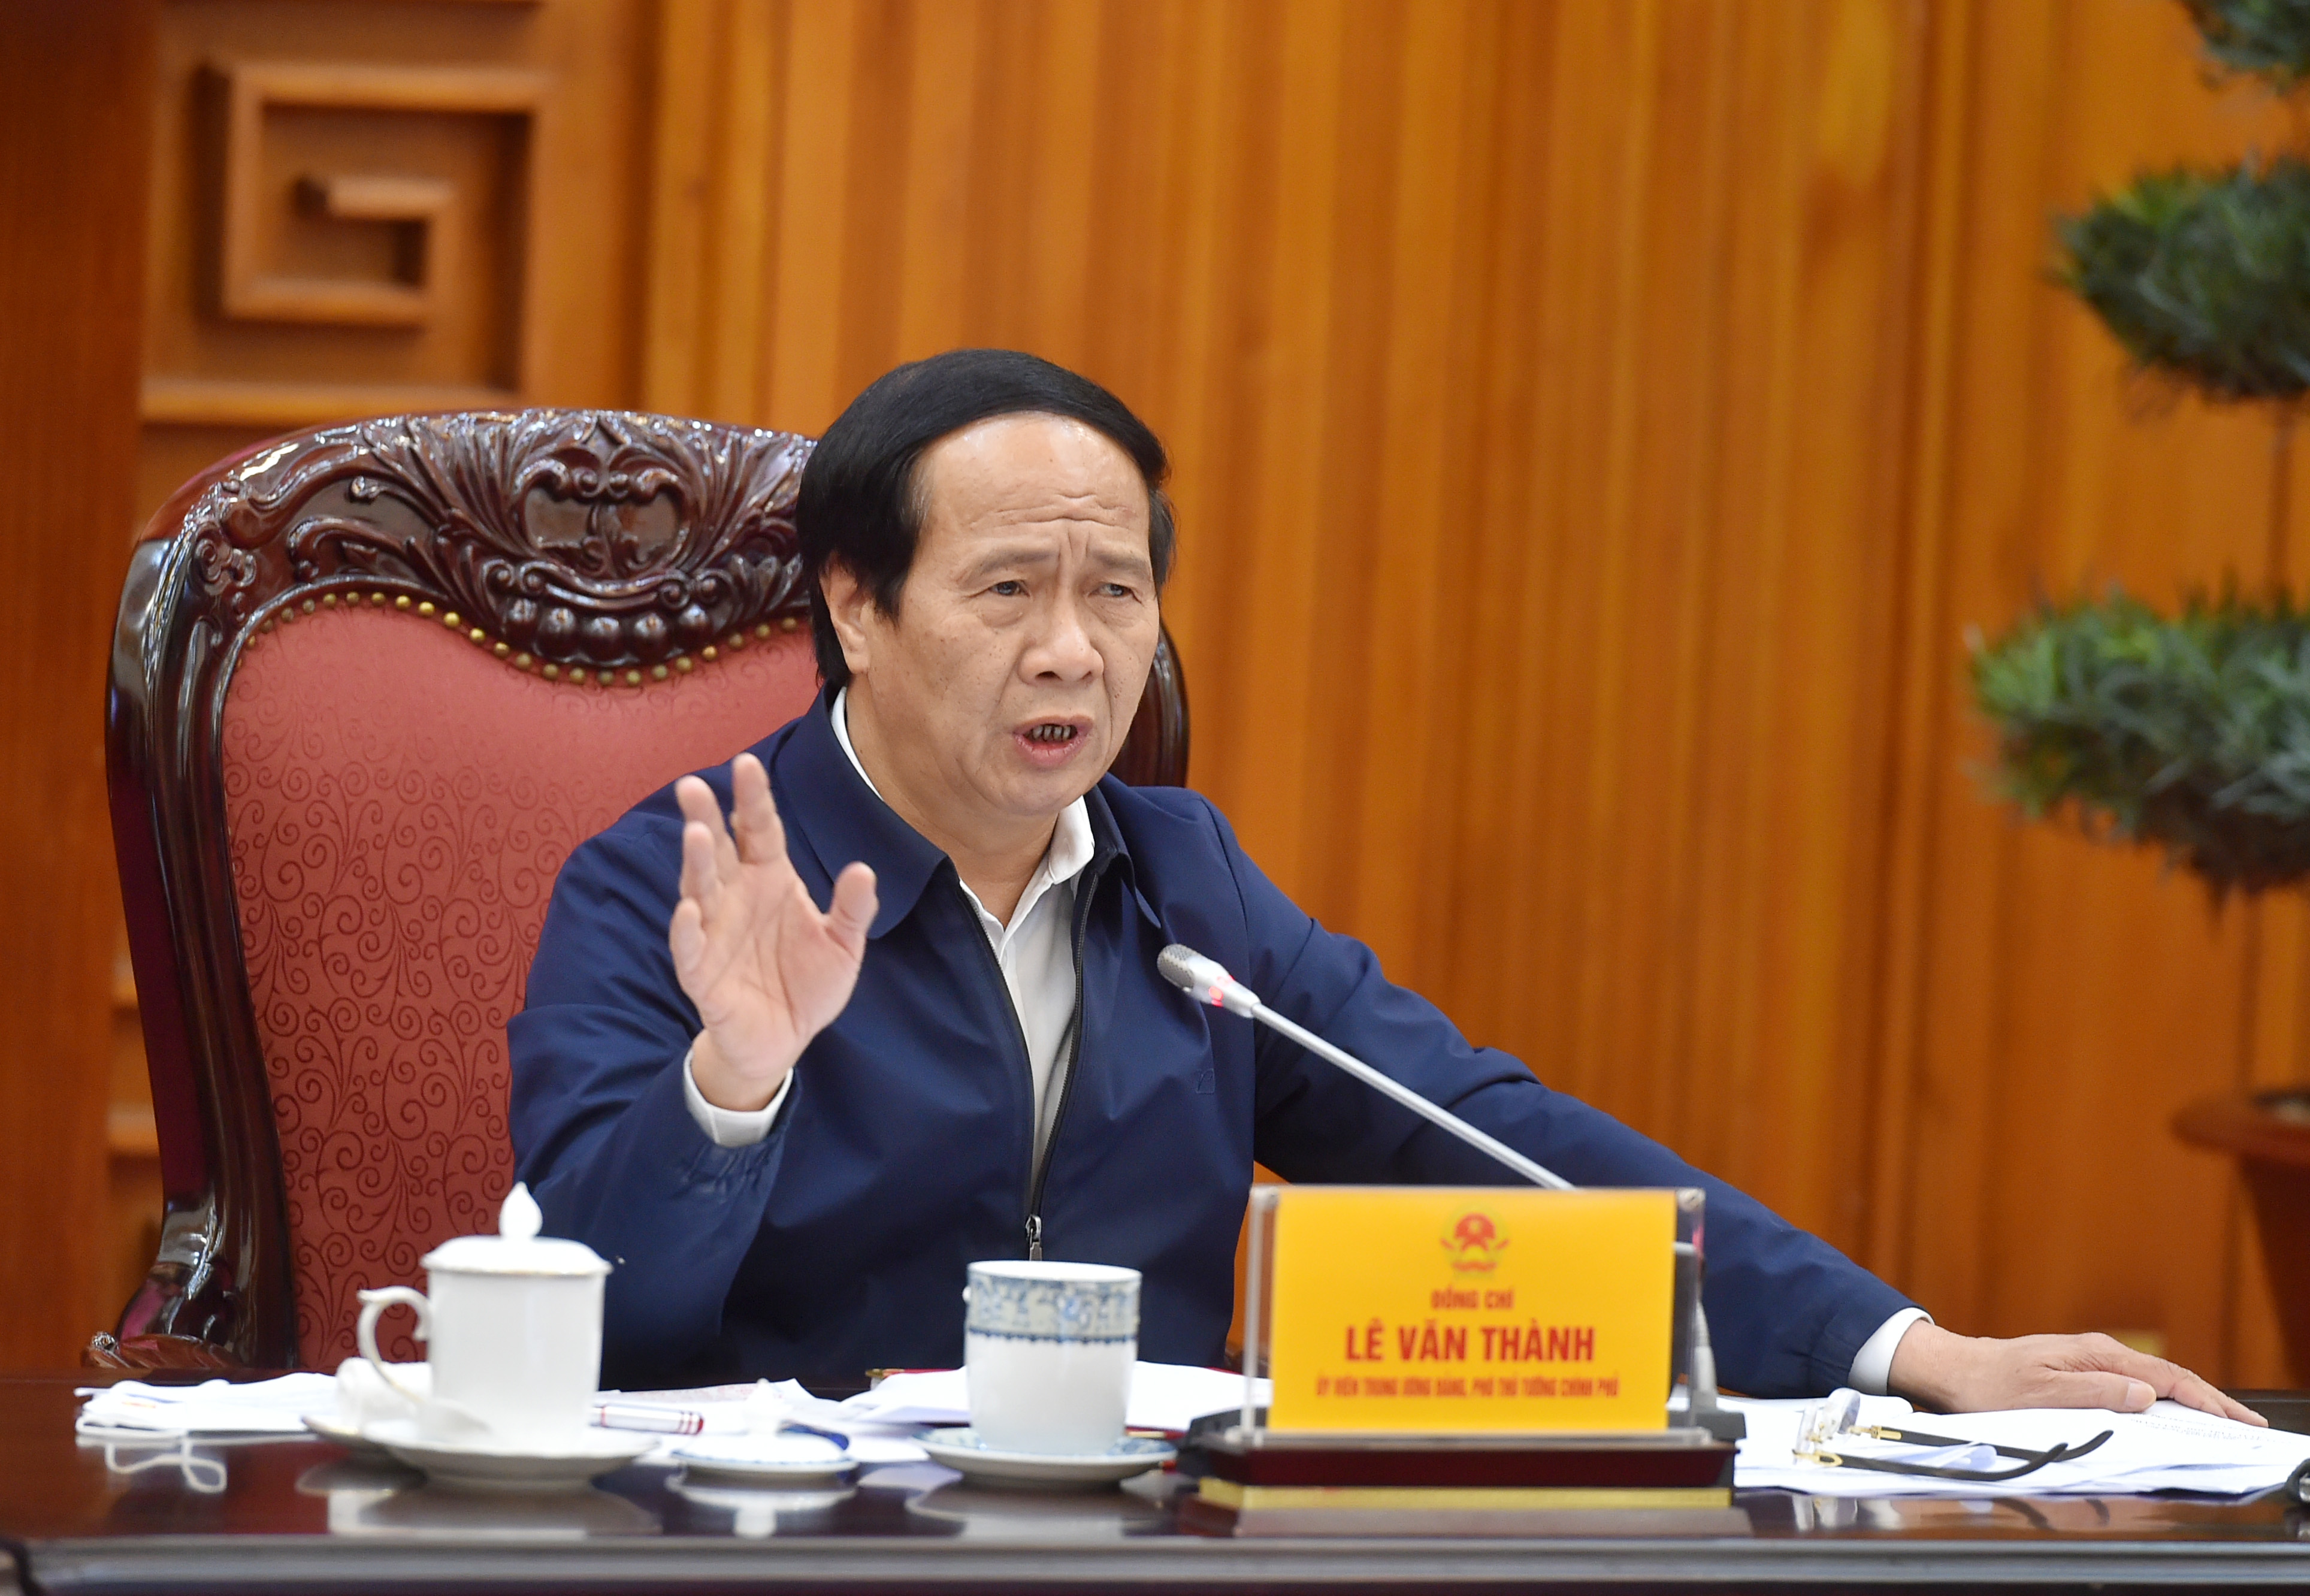 Phó thủ tướng Lê Văn Thành chỉ đạo sớm giải phóng lượng xe hàng hóa ùn ứ tại các tỉnh biên giới phía Bắc.